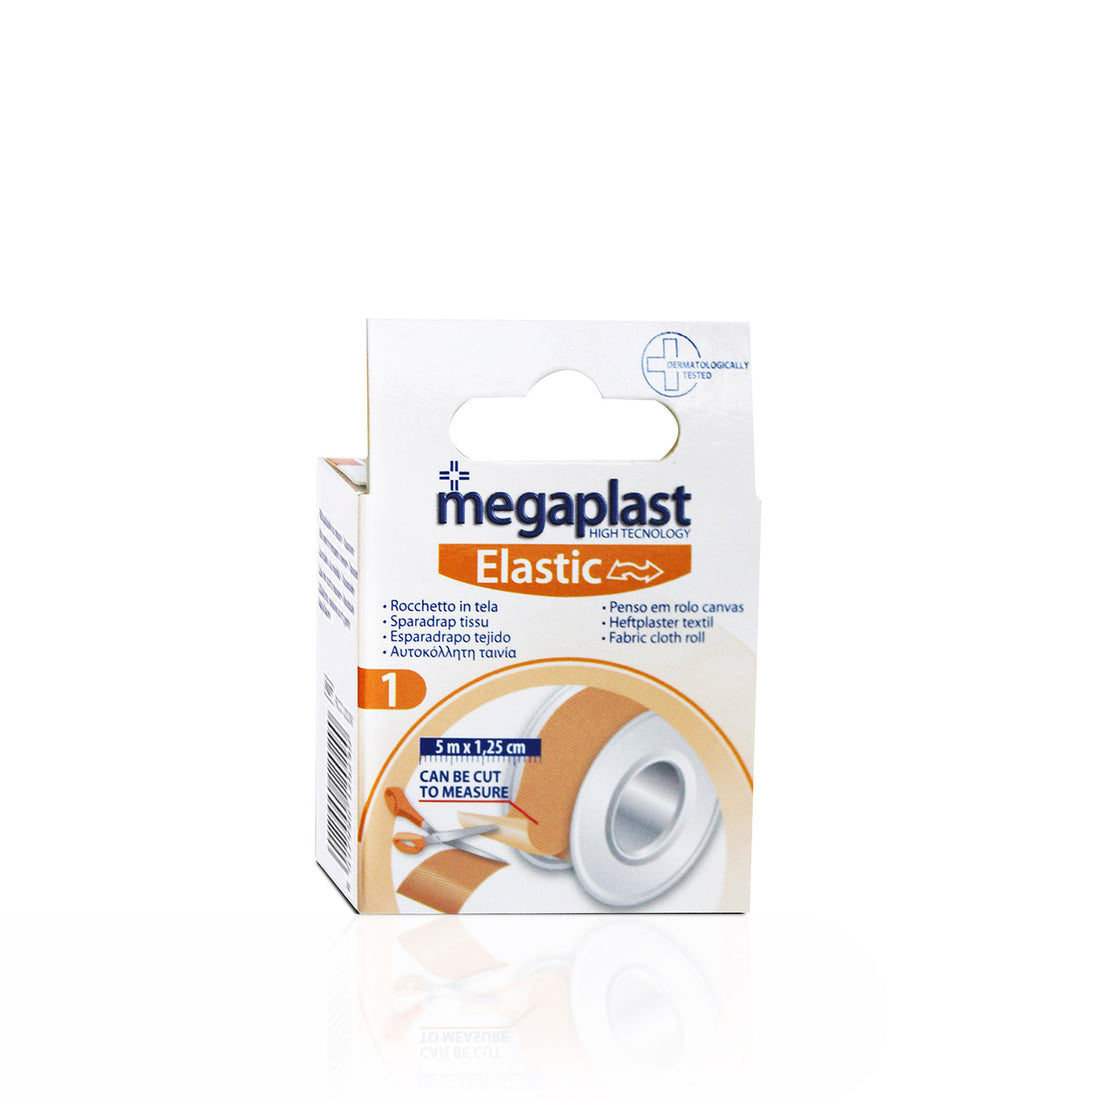 Megaplast Elastic Tape